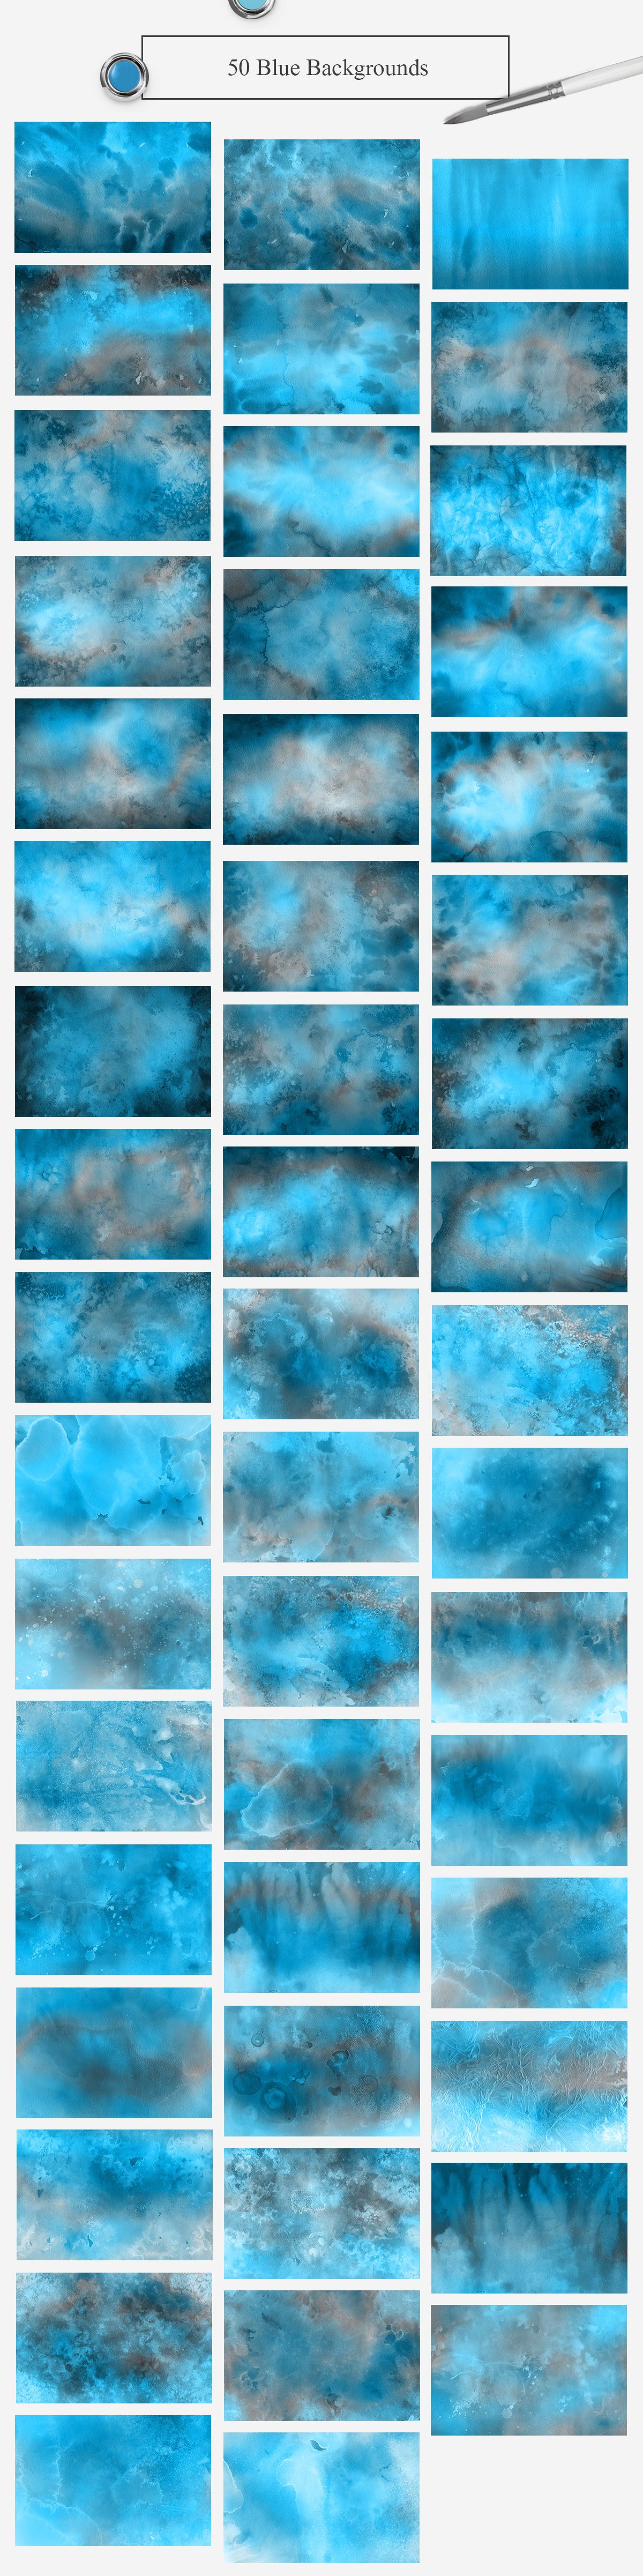 500张水彩纹理背景素材大合集3.32G[jpg]插图(7)